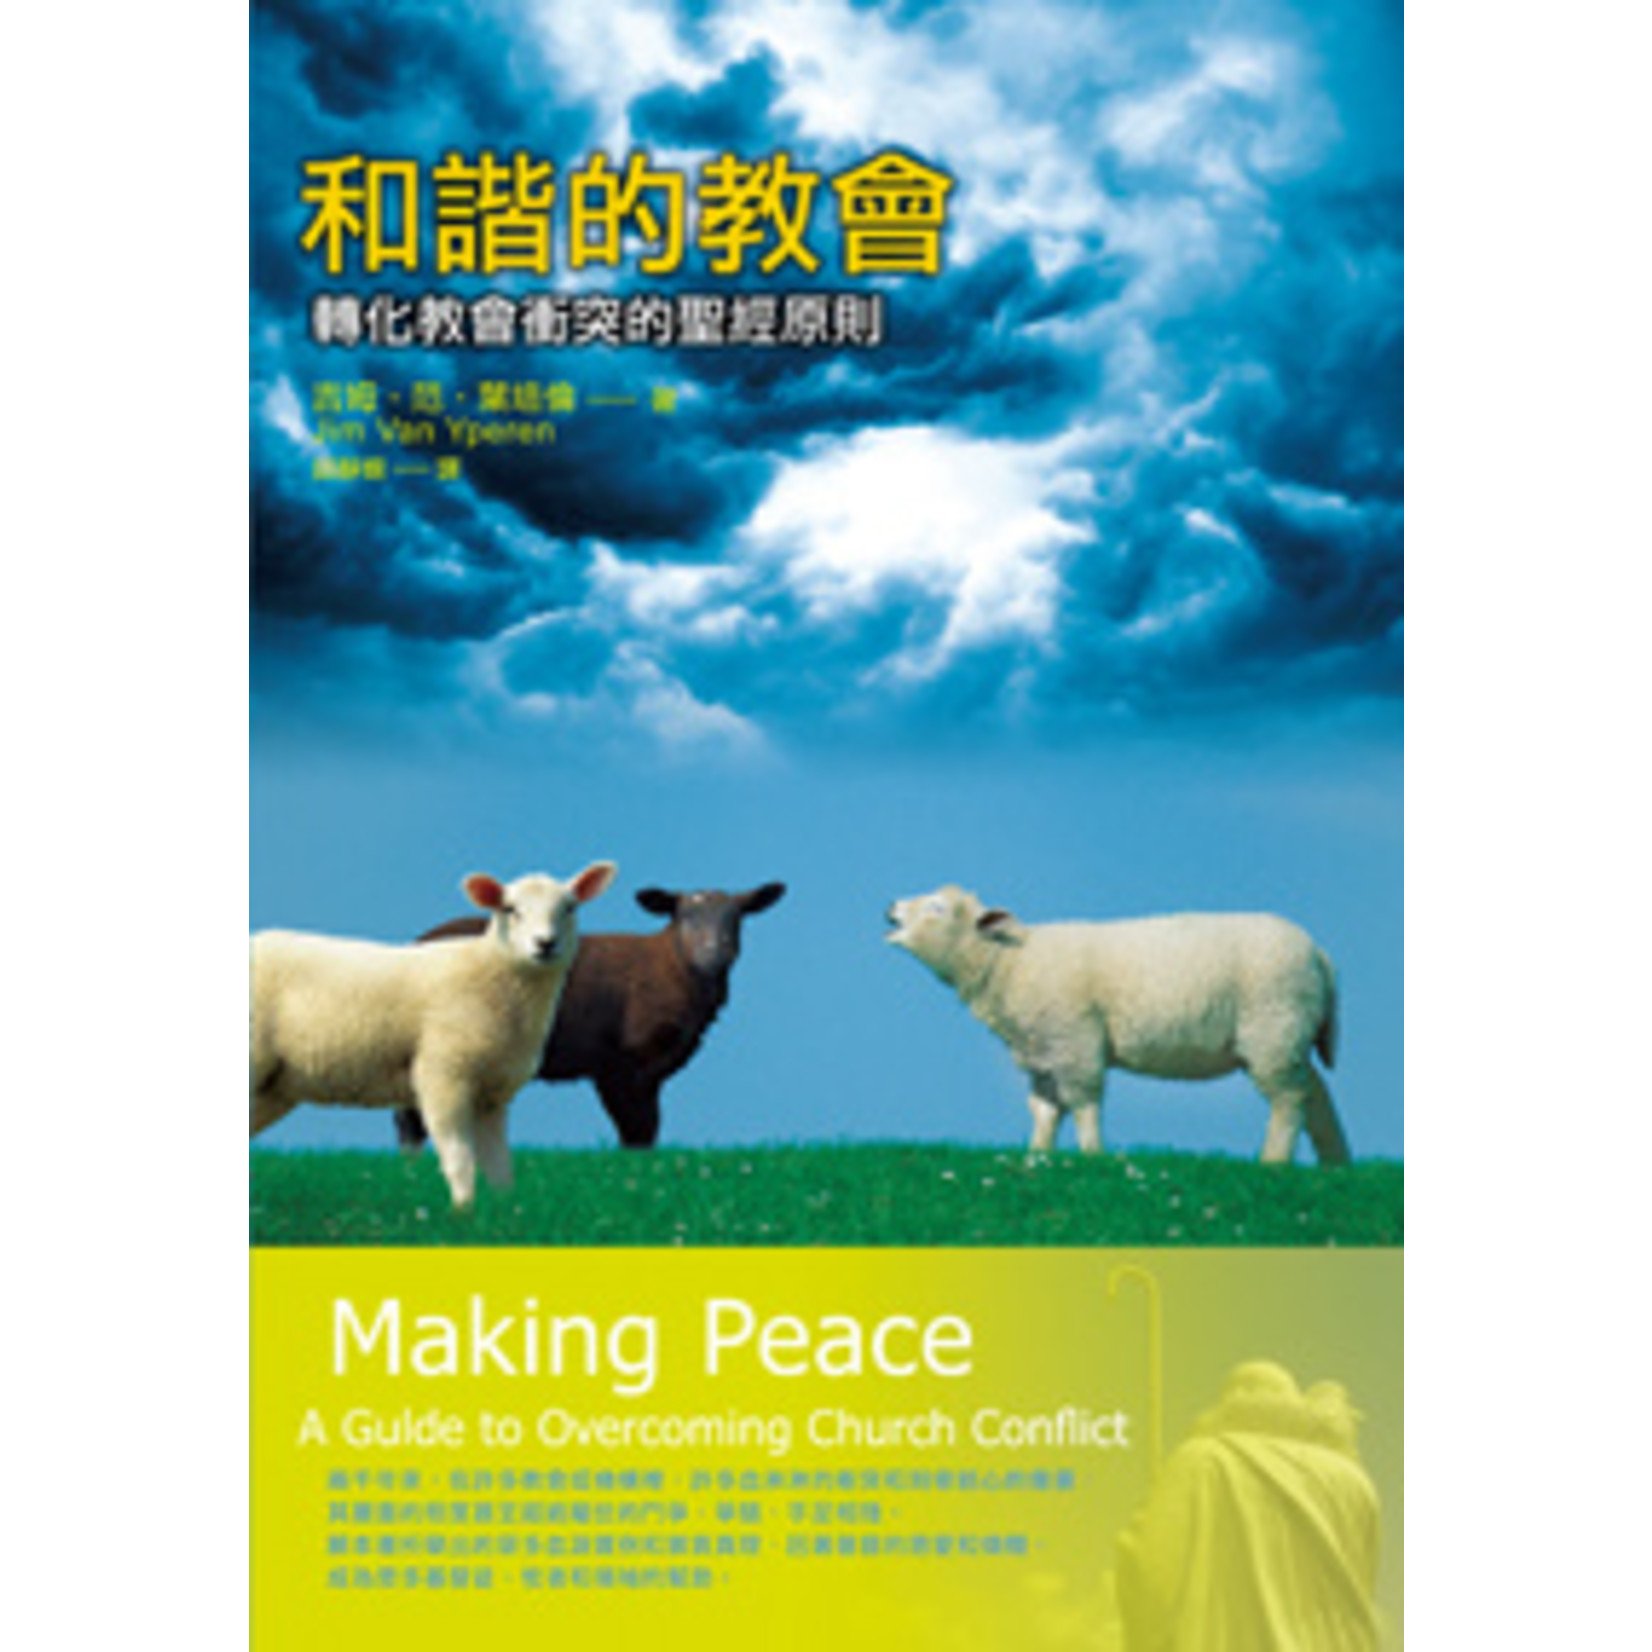 台灣中華福音神學院 China Evangelical Seminary 和諧的教會：轉化教會衝突的聖經原則 Making Peace: A Guide to Overcoming Church Conflict